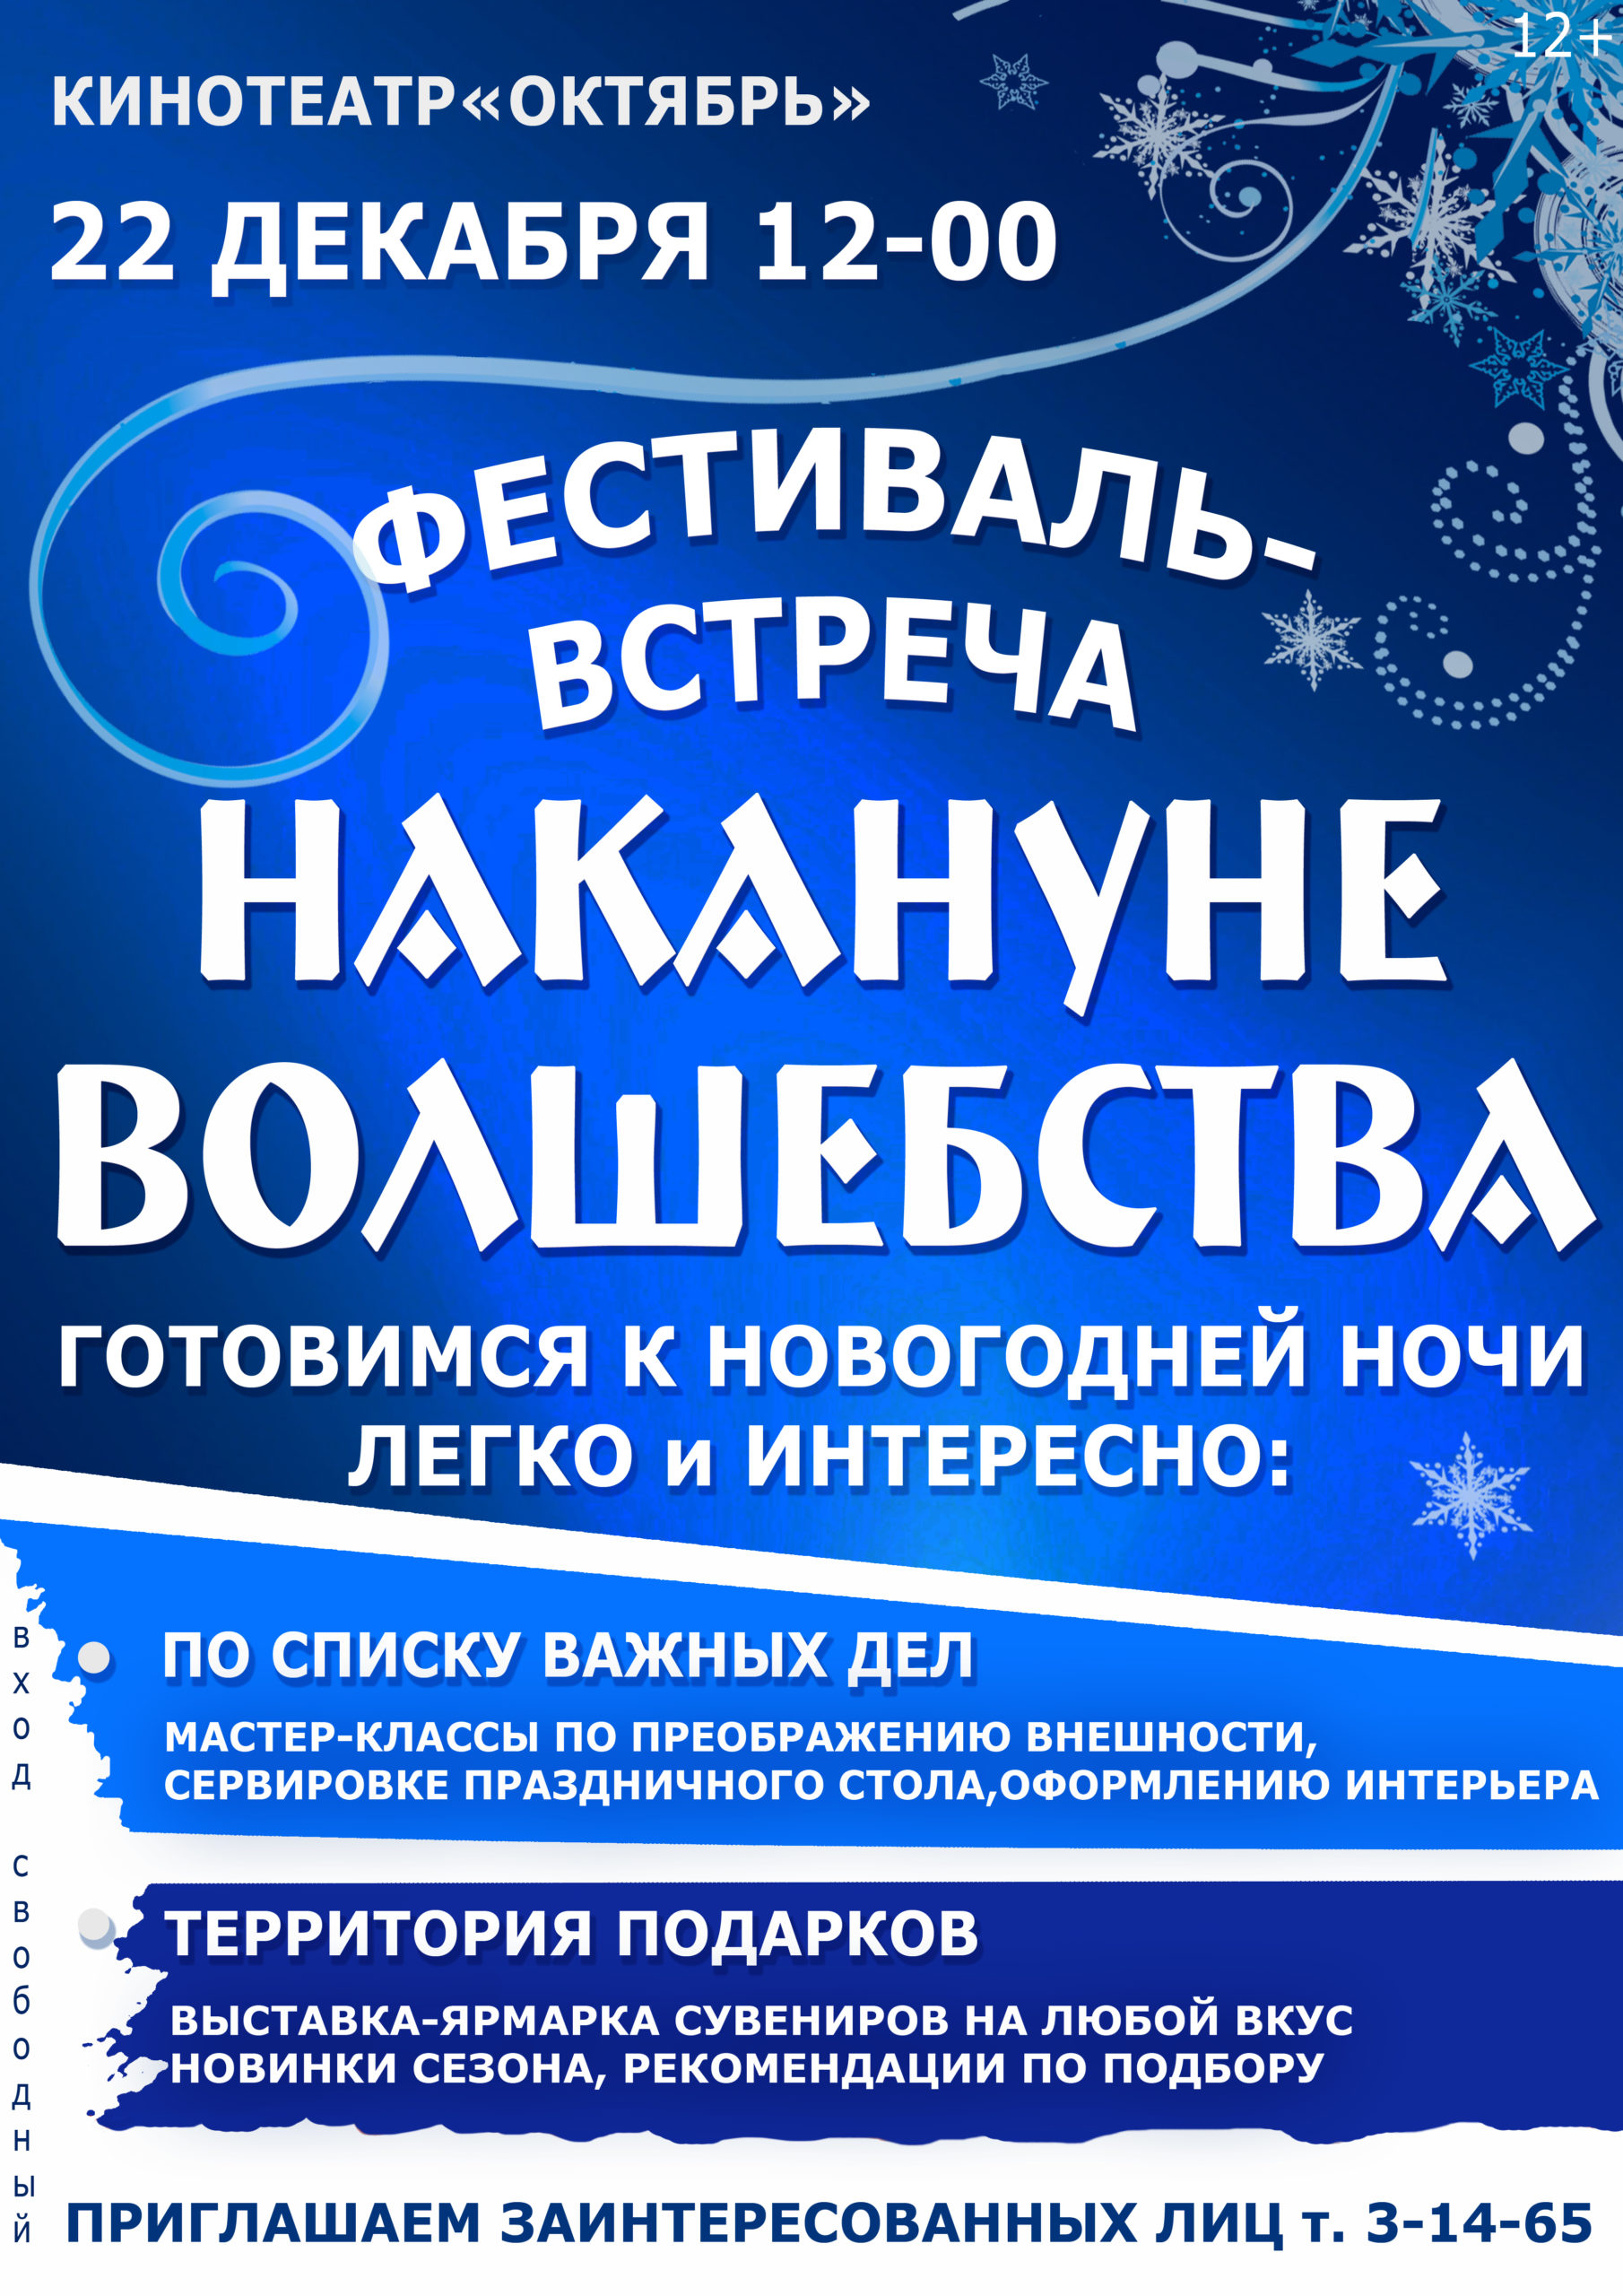 В Новозыбкове пройдёт новогодний фестиваль